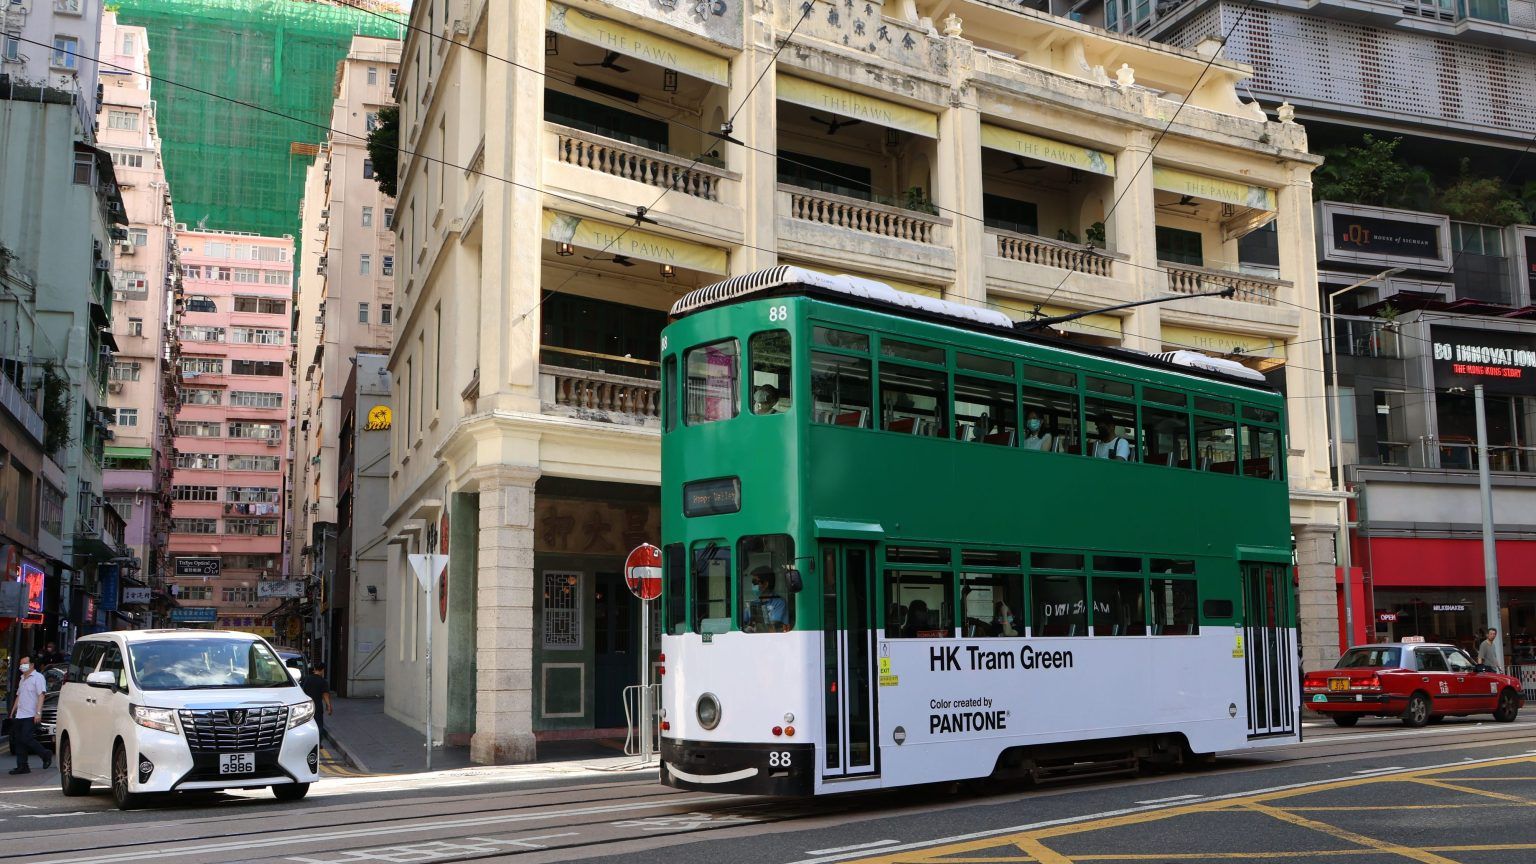 HK tram green